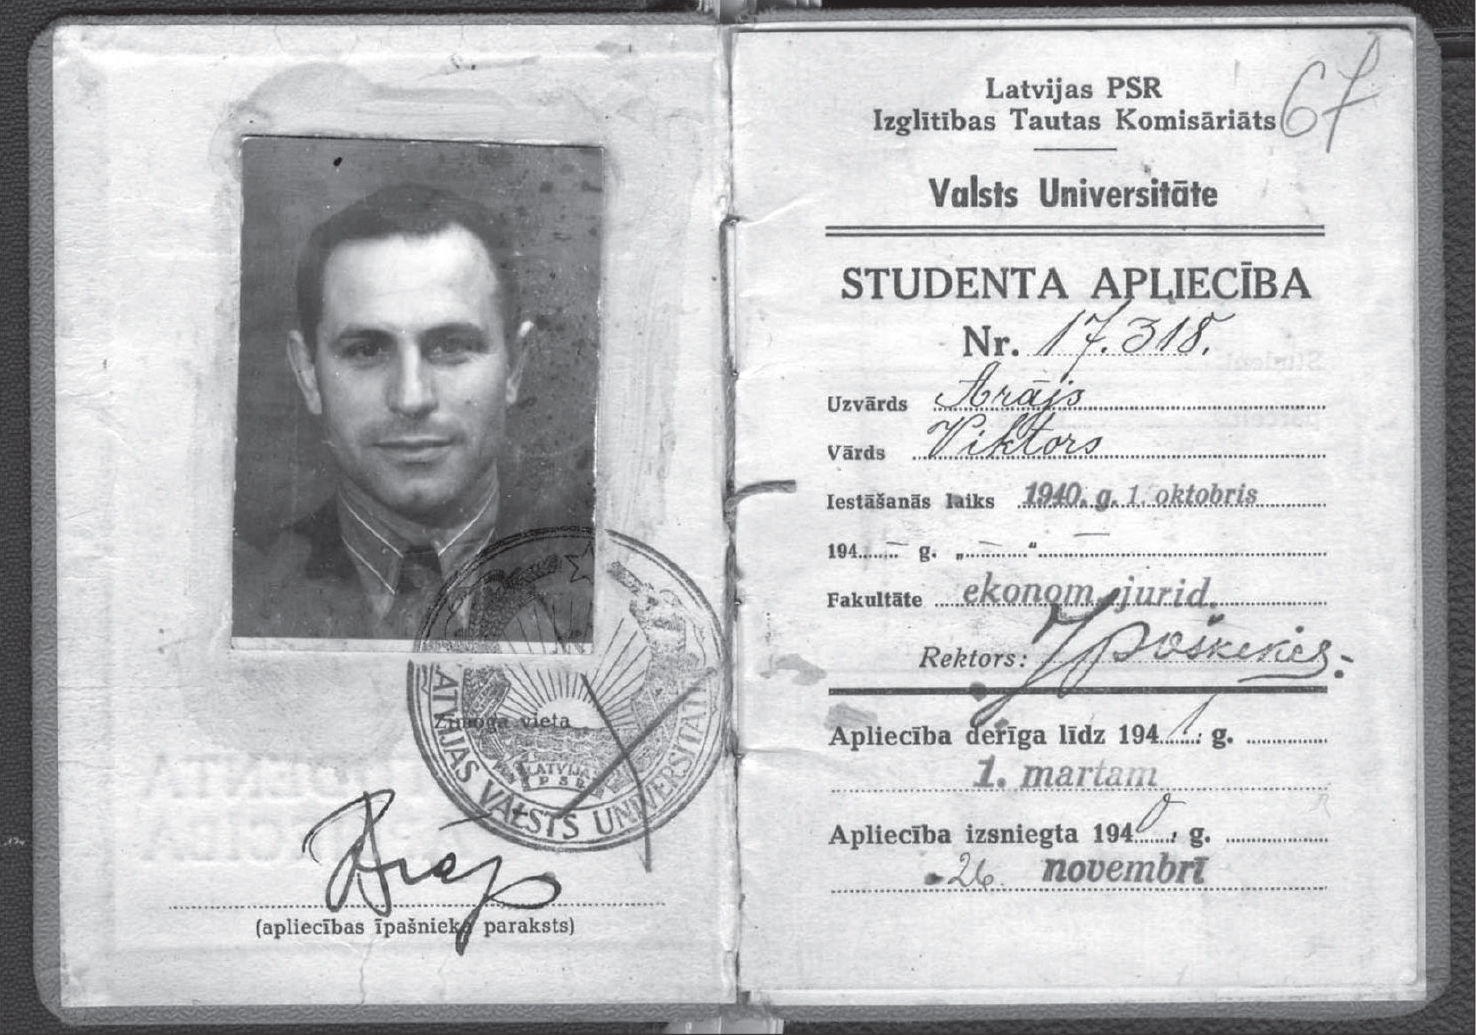 Студенческий билет Виктора Арайса из материалов Латвийского государственного исторического архива